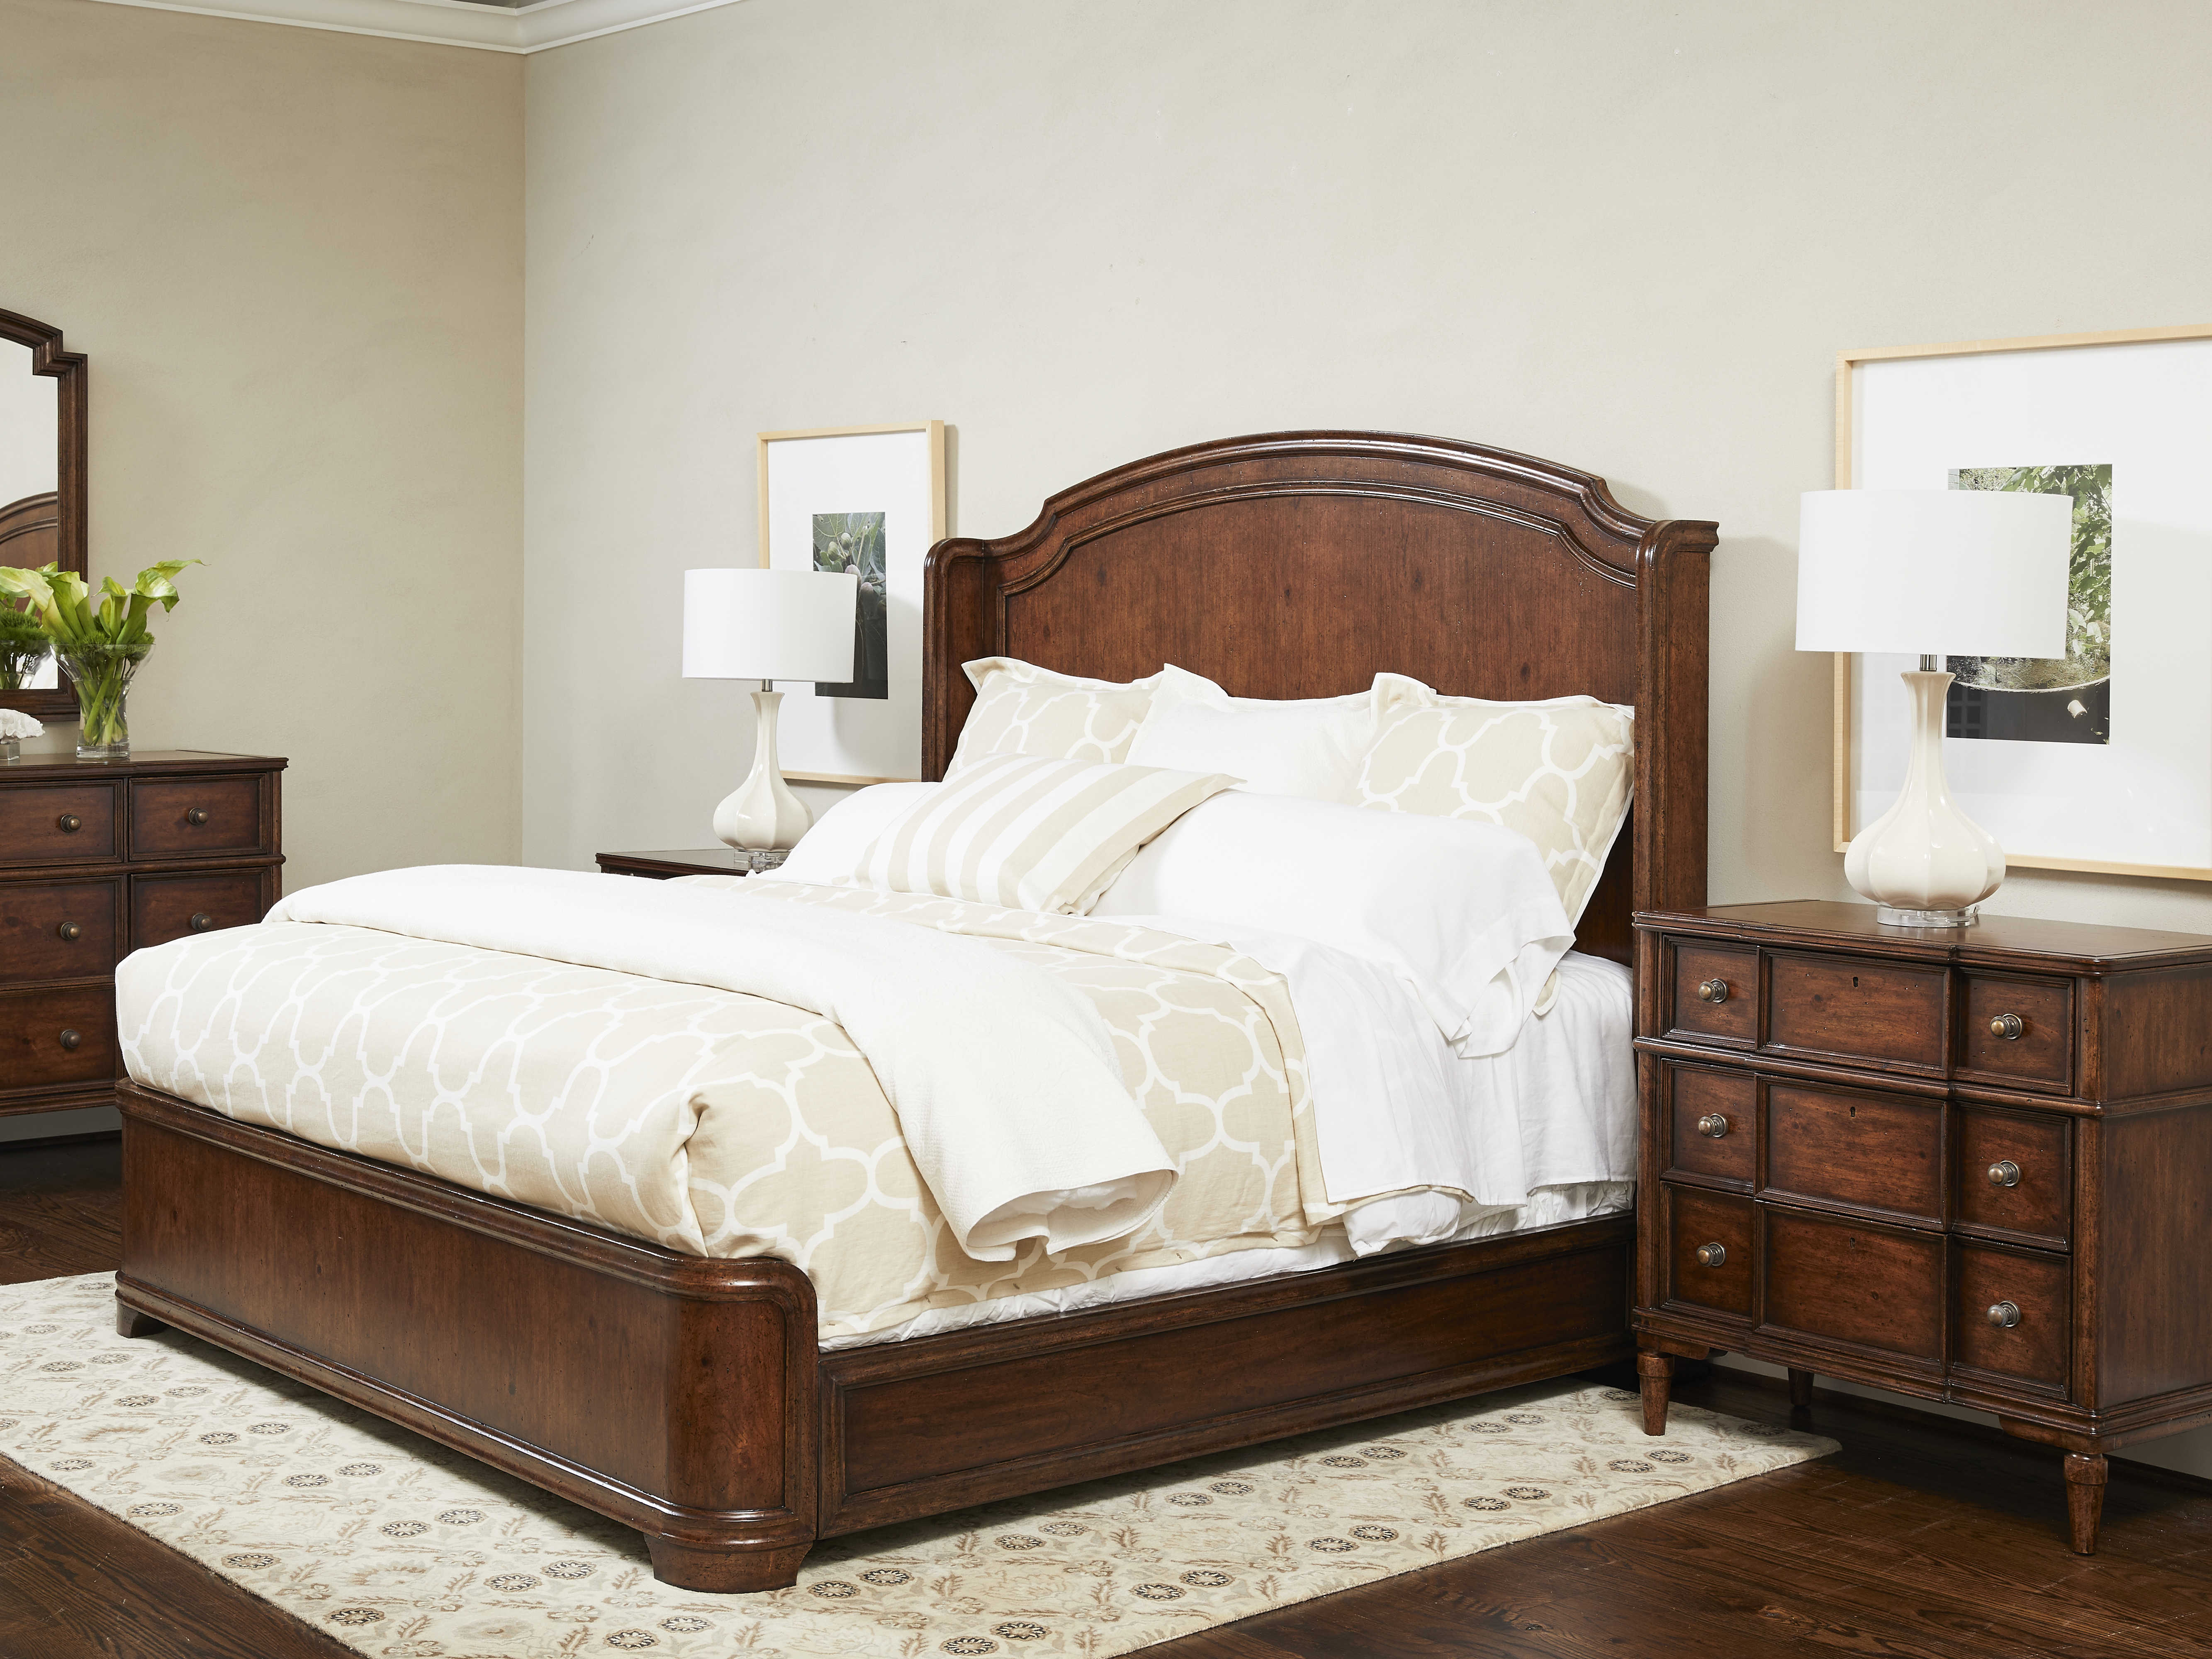 stanley furniture vintage bedroom collection